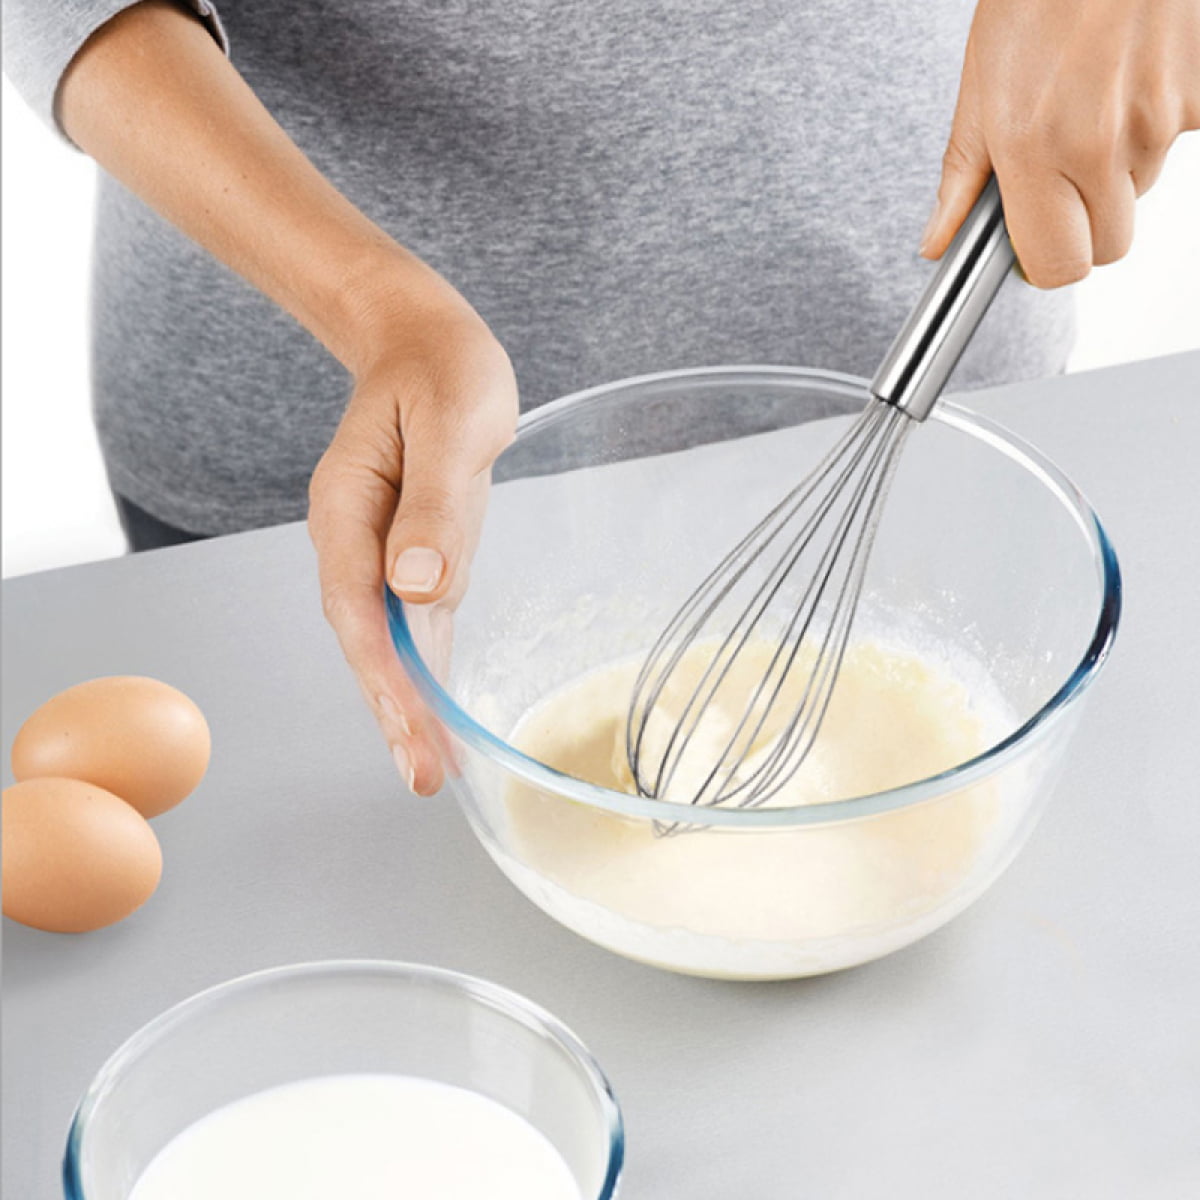 KGJQ Egg Beater - Stainless Steel Easy Whisk, Heat Resistant Kitchen Whisks - Balloon Egg Beater Perfect for Blending, Whisking, Beating, Frothing 